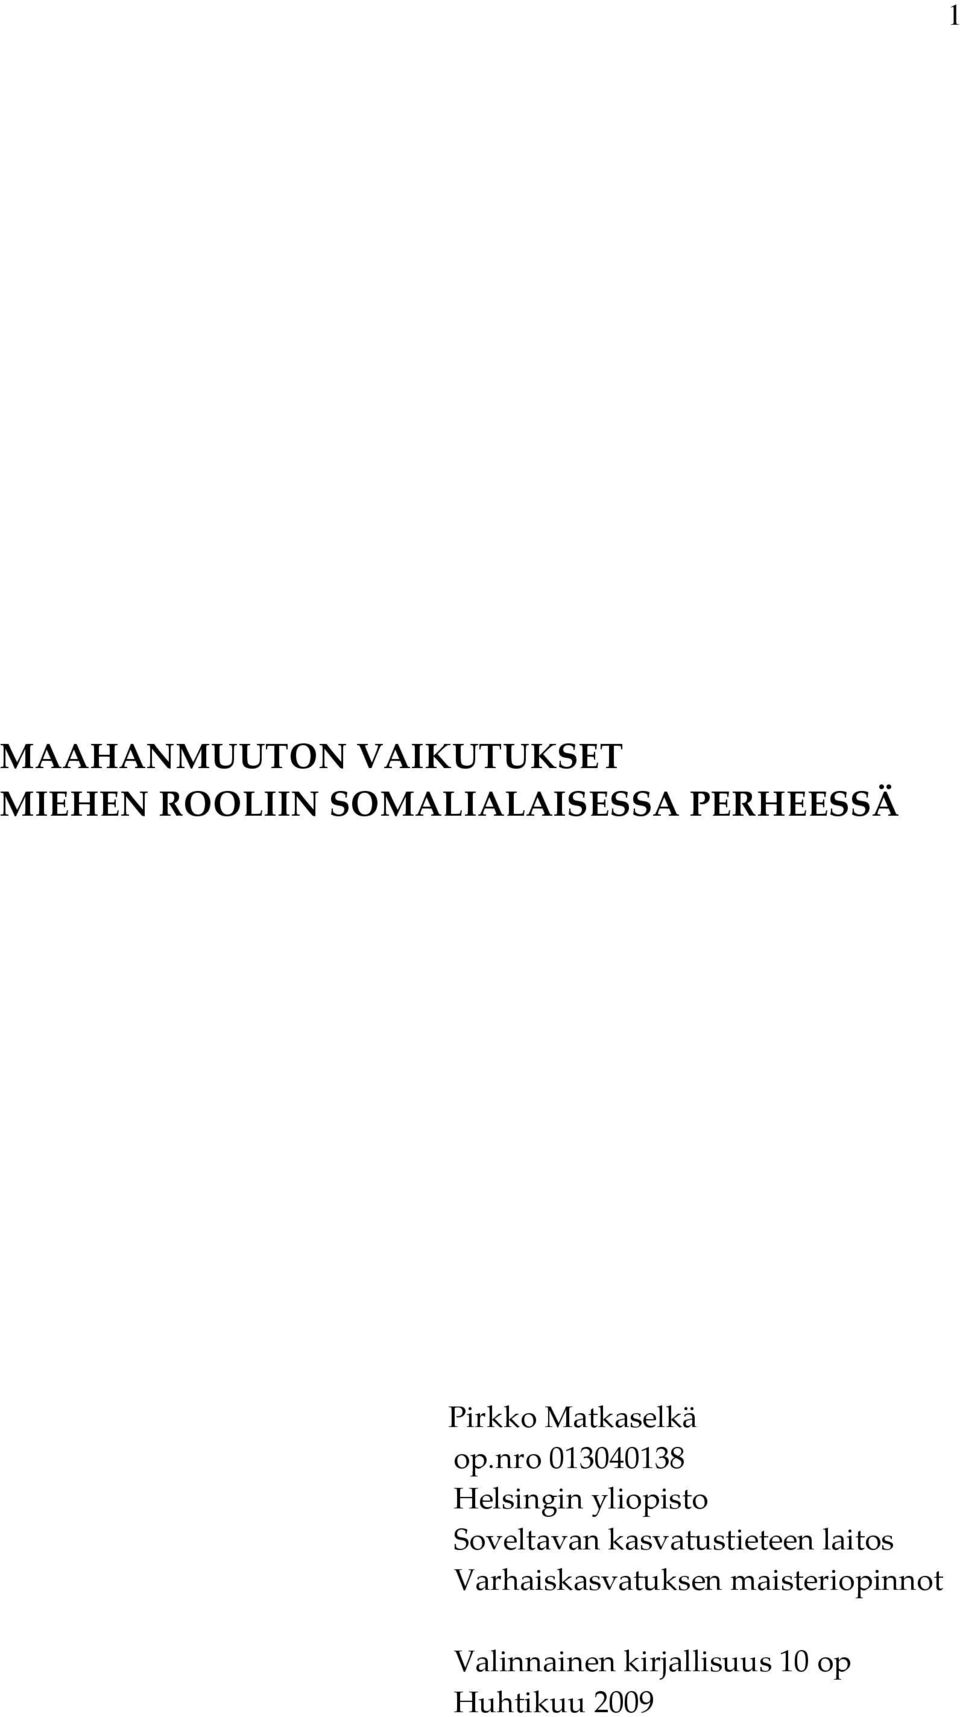 nro 013040138 Helsingin yliopisto Soveltavan